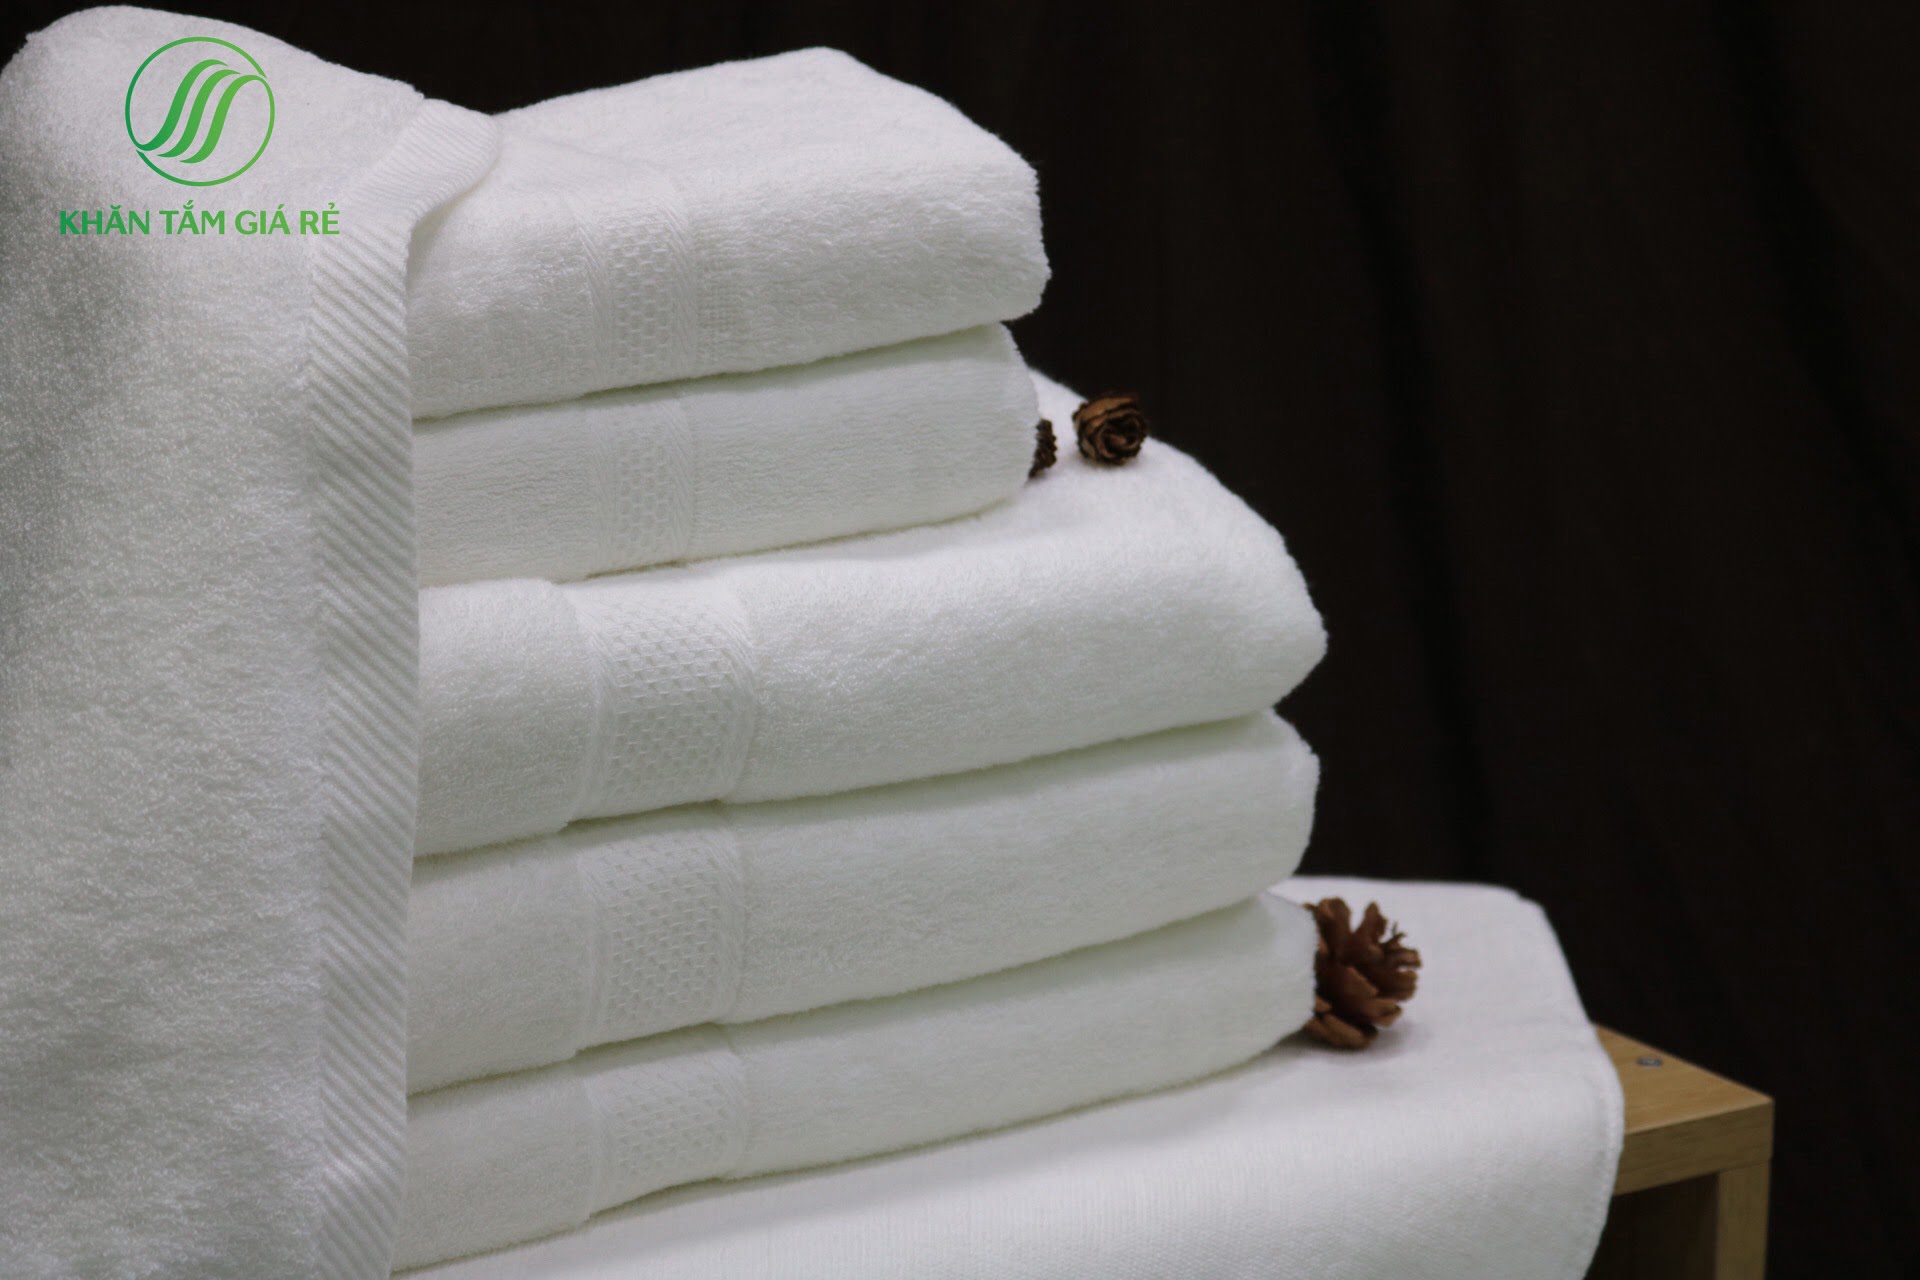 Chủ kinh doanh nhà nghỉ, khách sạn cần phải quan tâm đặc biệt đến chiếc khăn cũng như chọn đơn vị công ty sản xuất khăn uy tín, chất lượng 